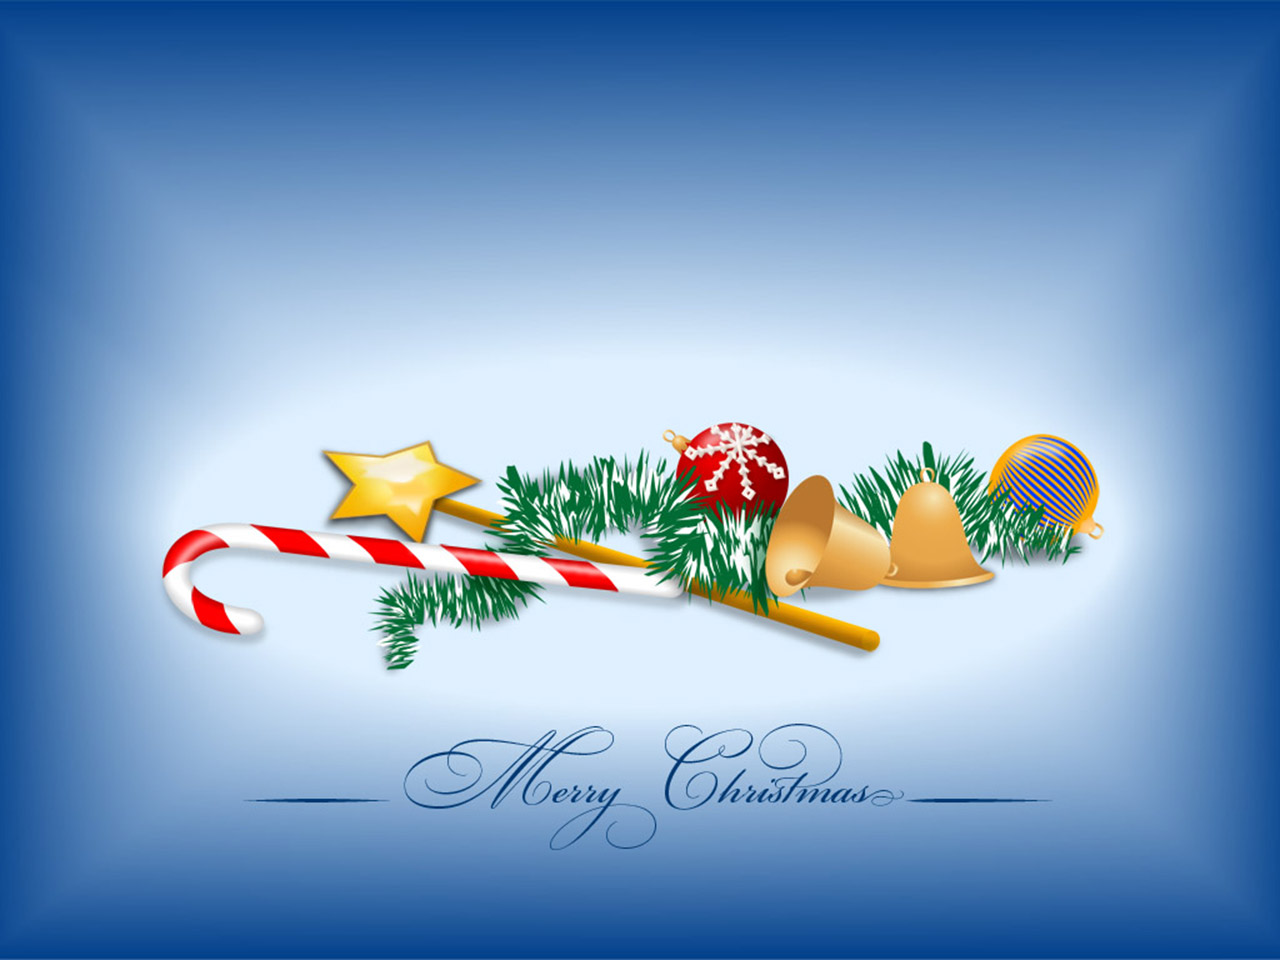 http://3.bp.blogspot.com/-VLHZwBC5vxg/Tqfi615mtEI/AAAAAAAAFSw/WanmLOhiq8s/s1600/Christmas+HD+desktop+wallpaper+Merry-Christmas-Wallpaper.jpg